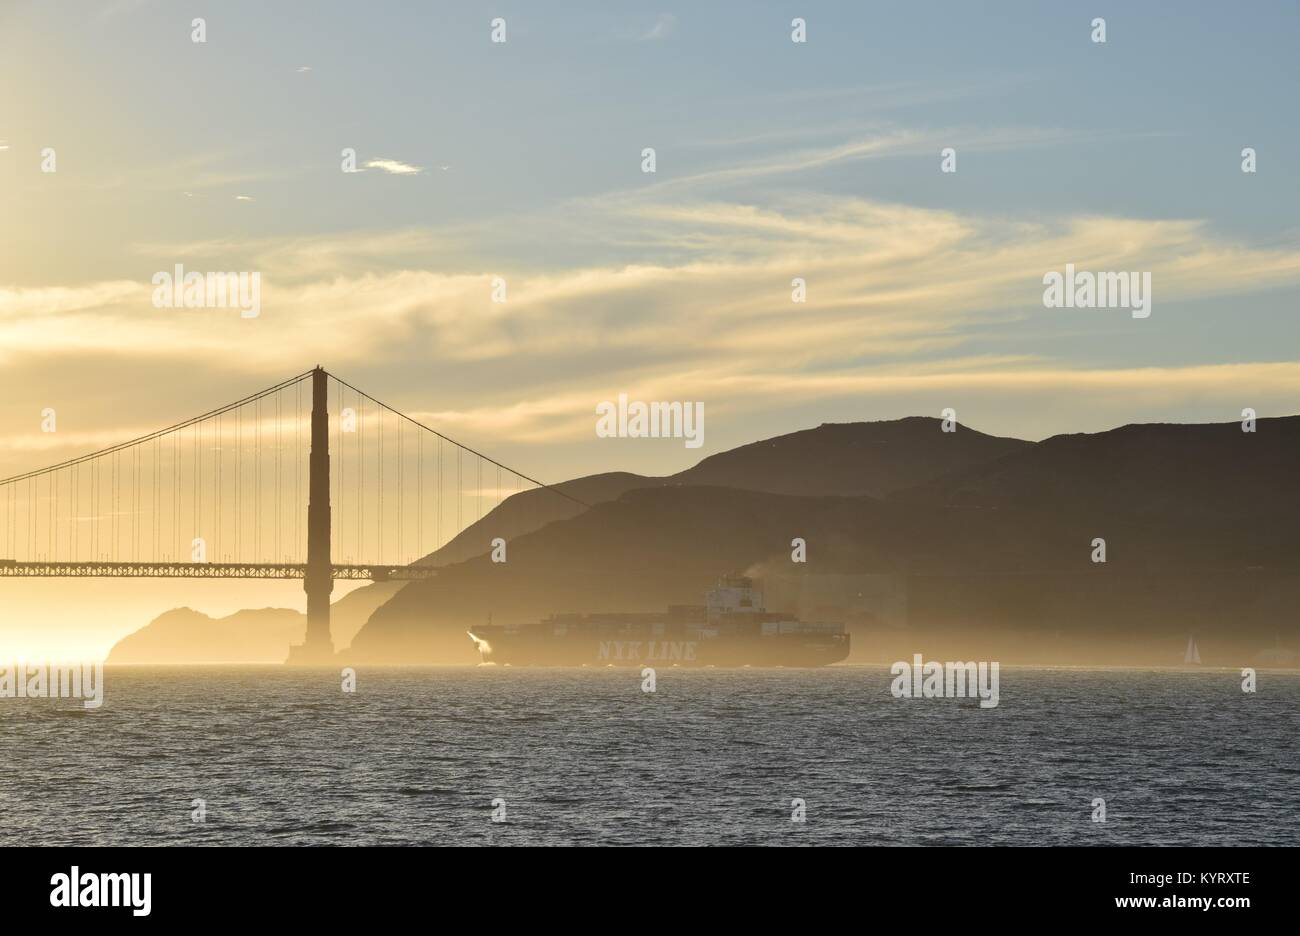 Contenitore nave NYK costellazione lascia San Francisco Bay sotto il Golden Gate Bridge verso il tramonto. Foto Stock